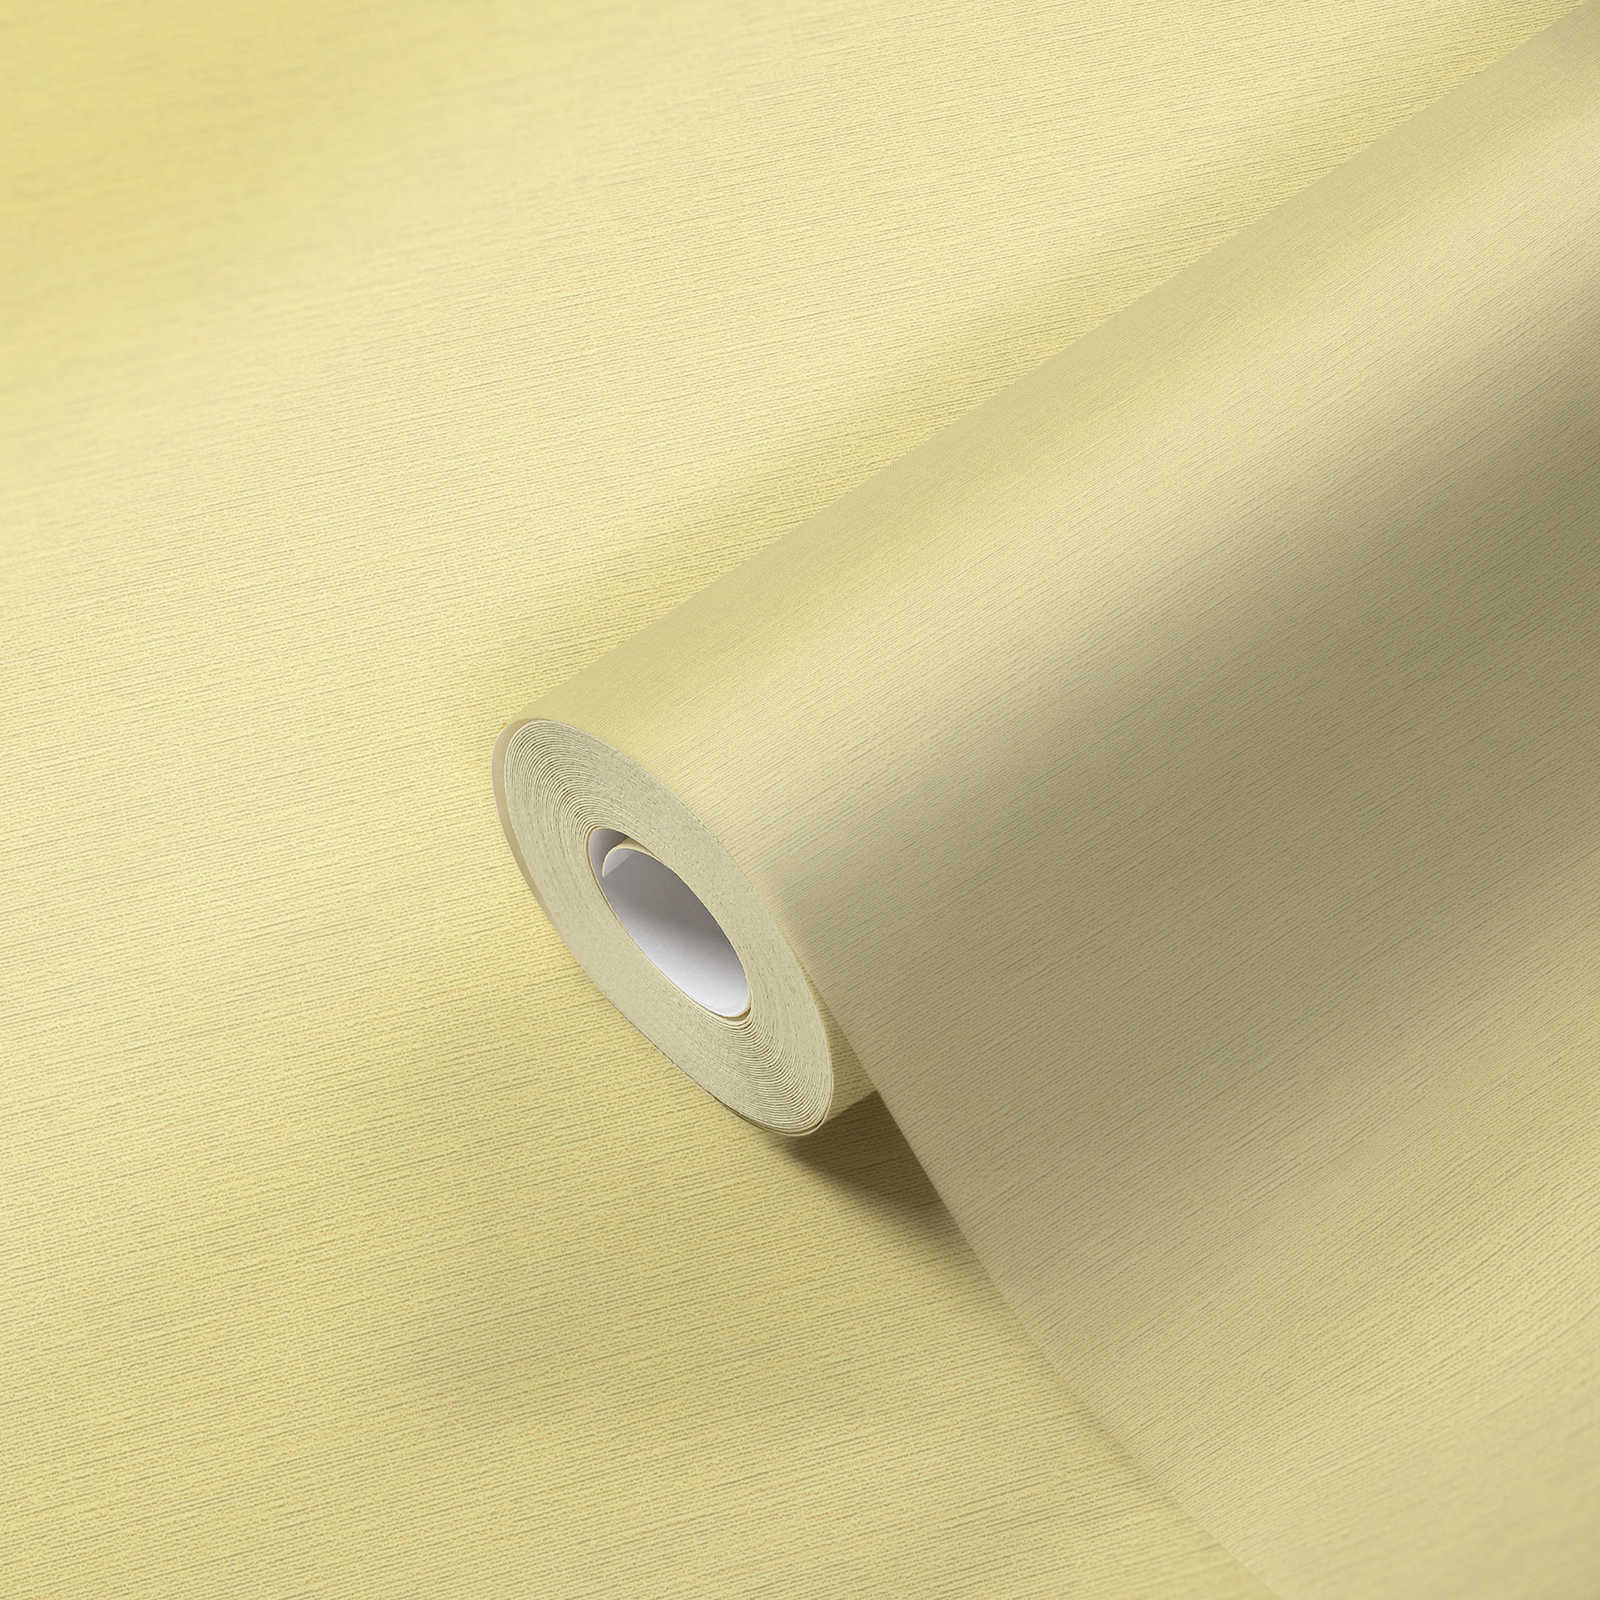             Papier peint pastel jaune uni avec structure textile
        